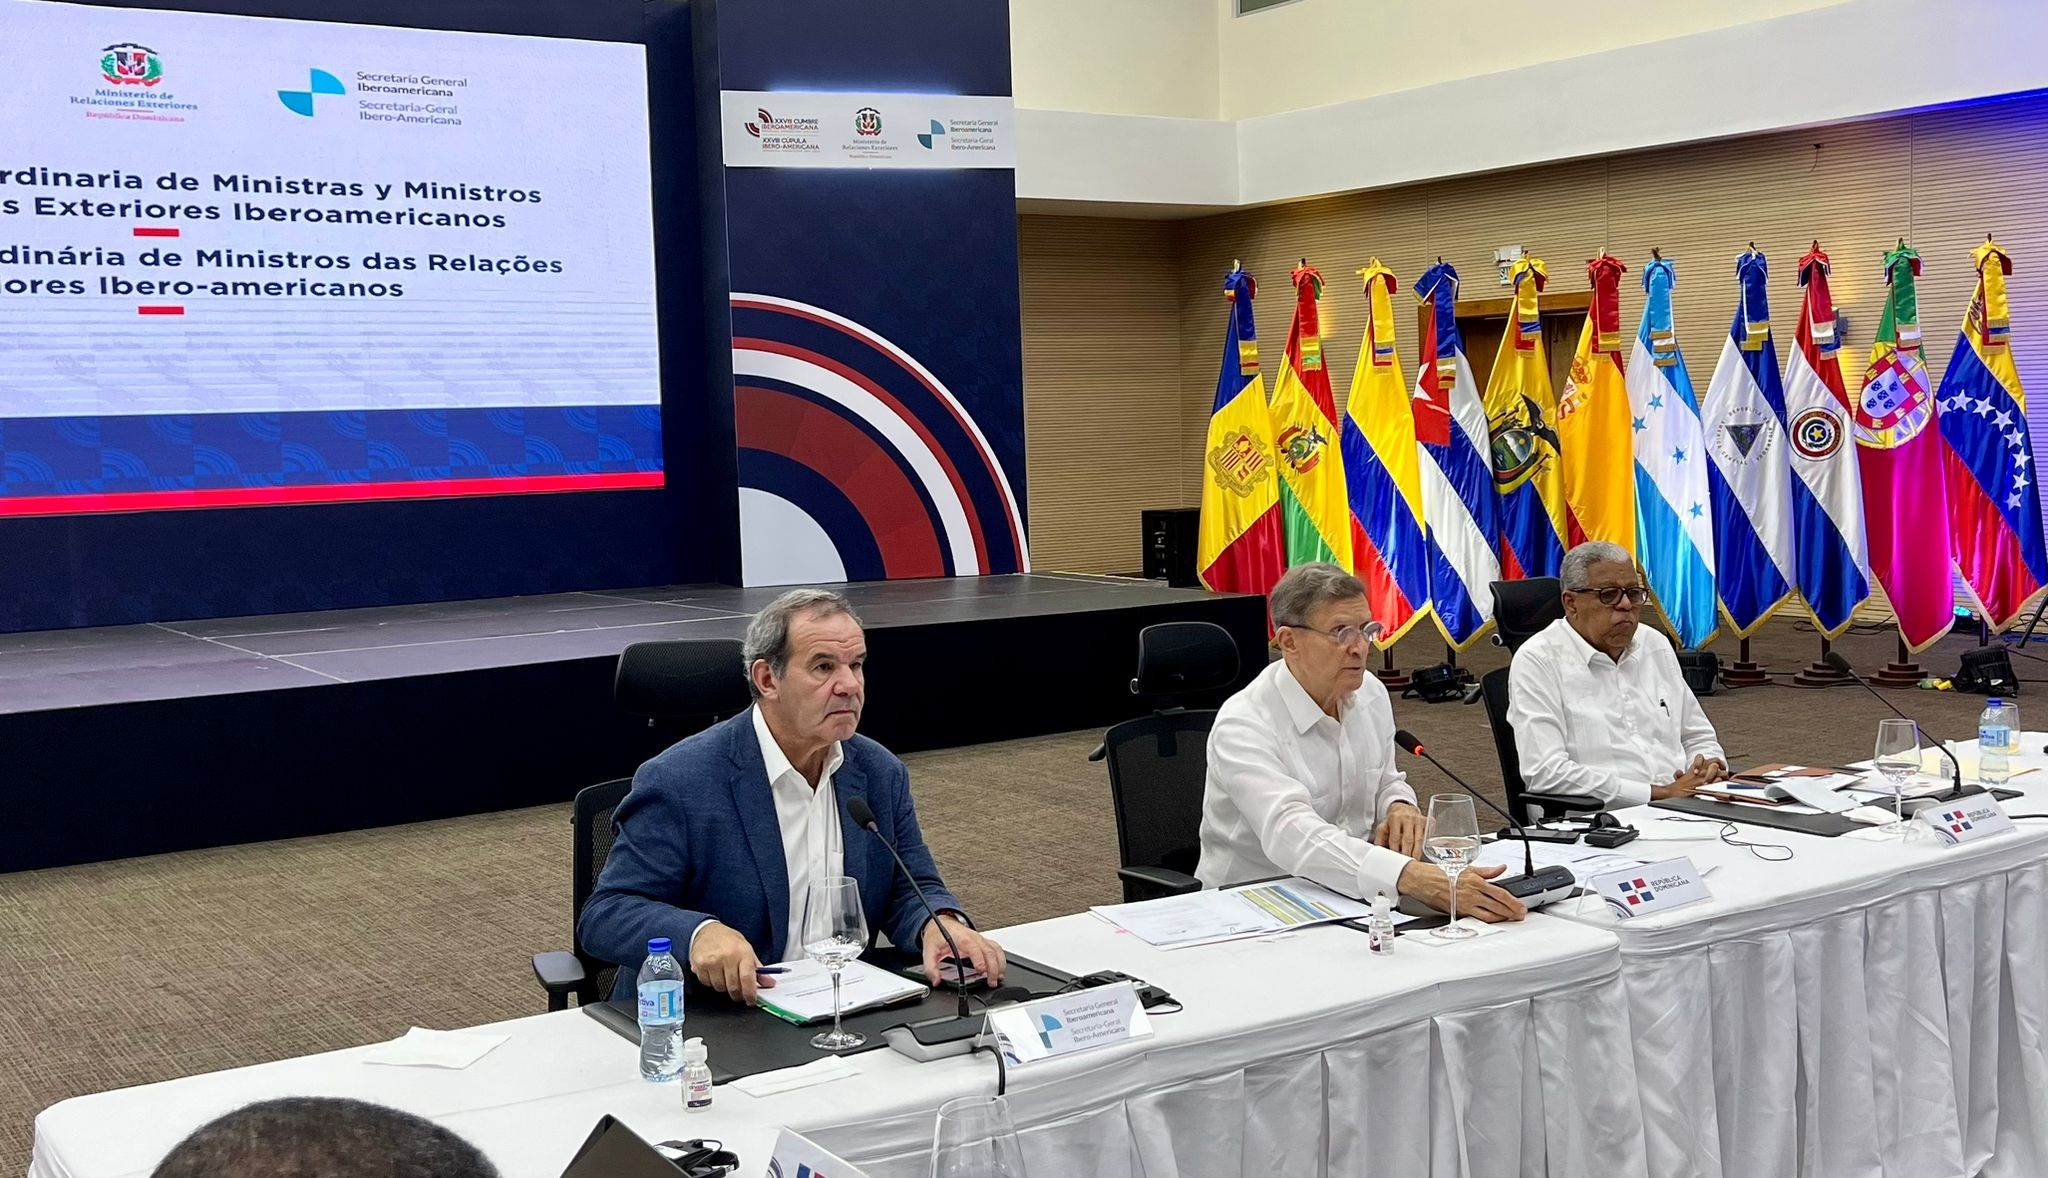 Colombia participó en la reunión extraordinaria de Ministros y Ministras de Relaciones Exteriores de Iberoamérica